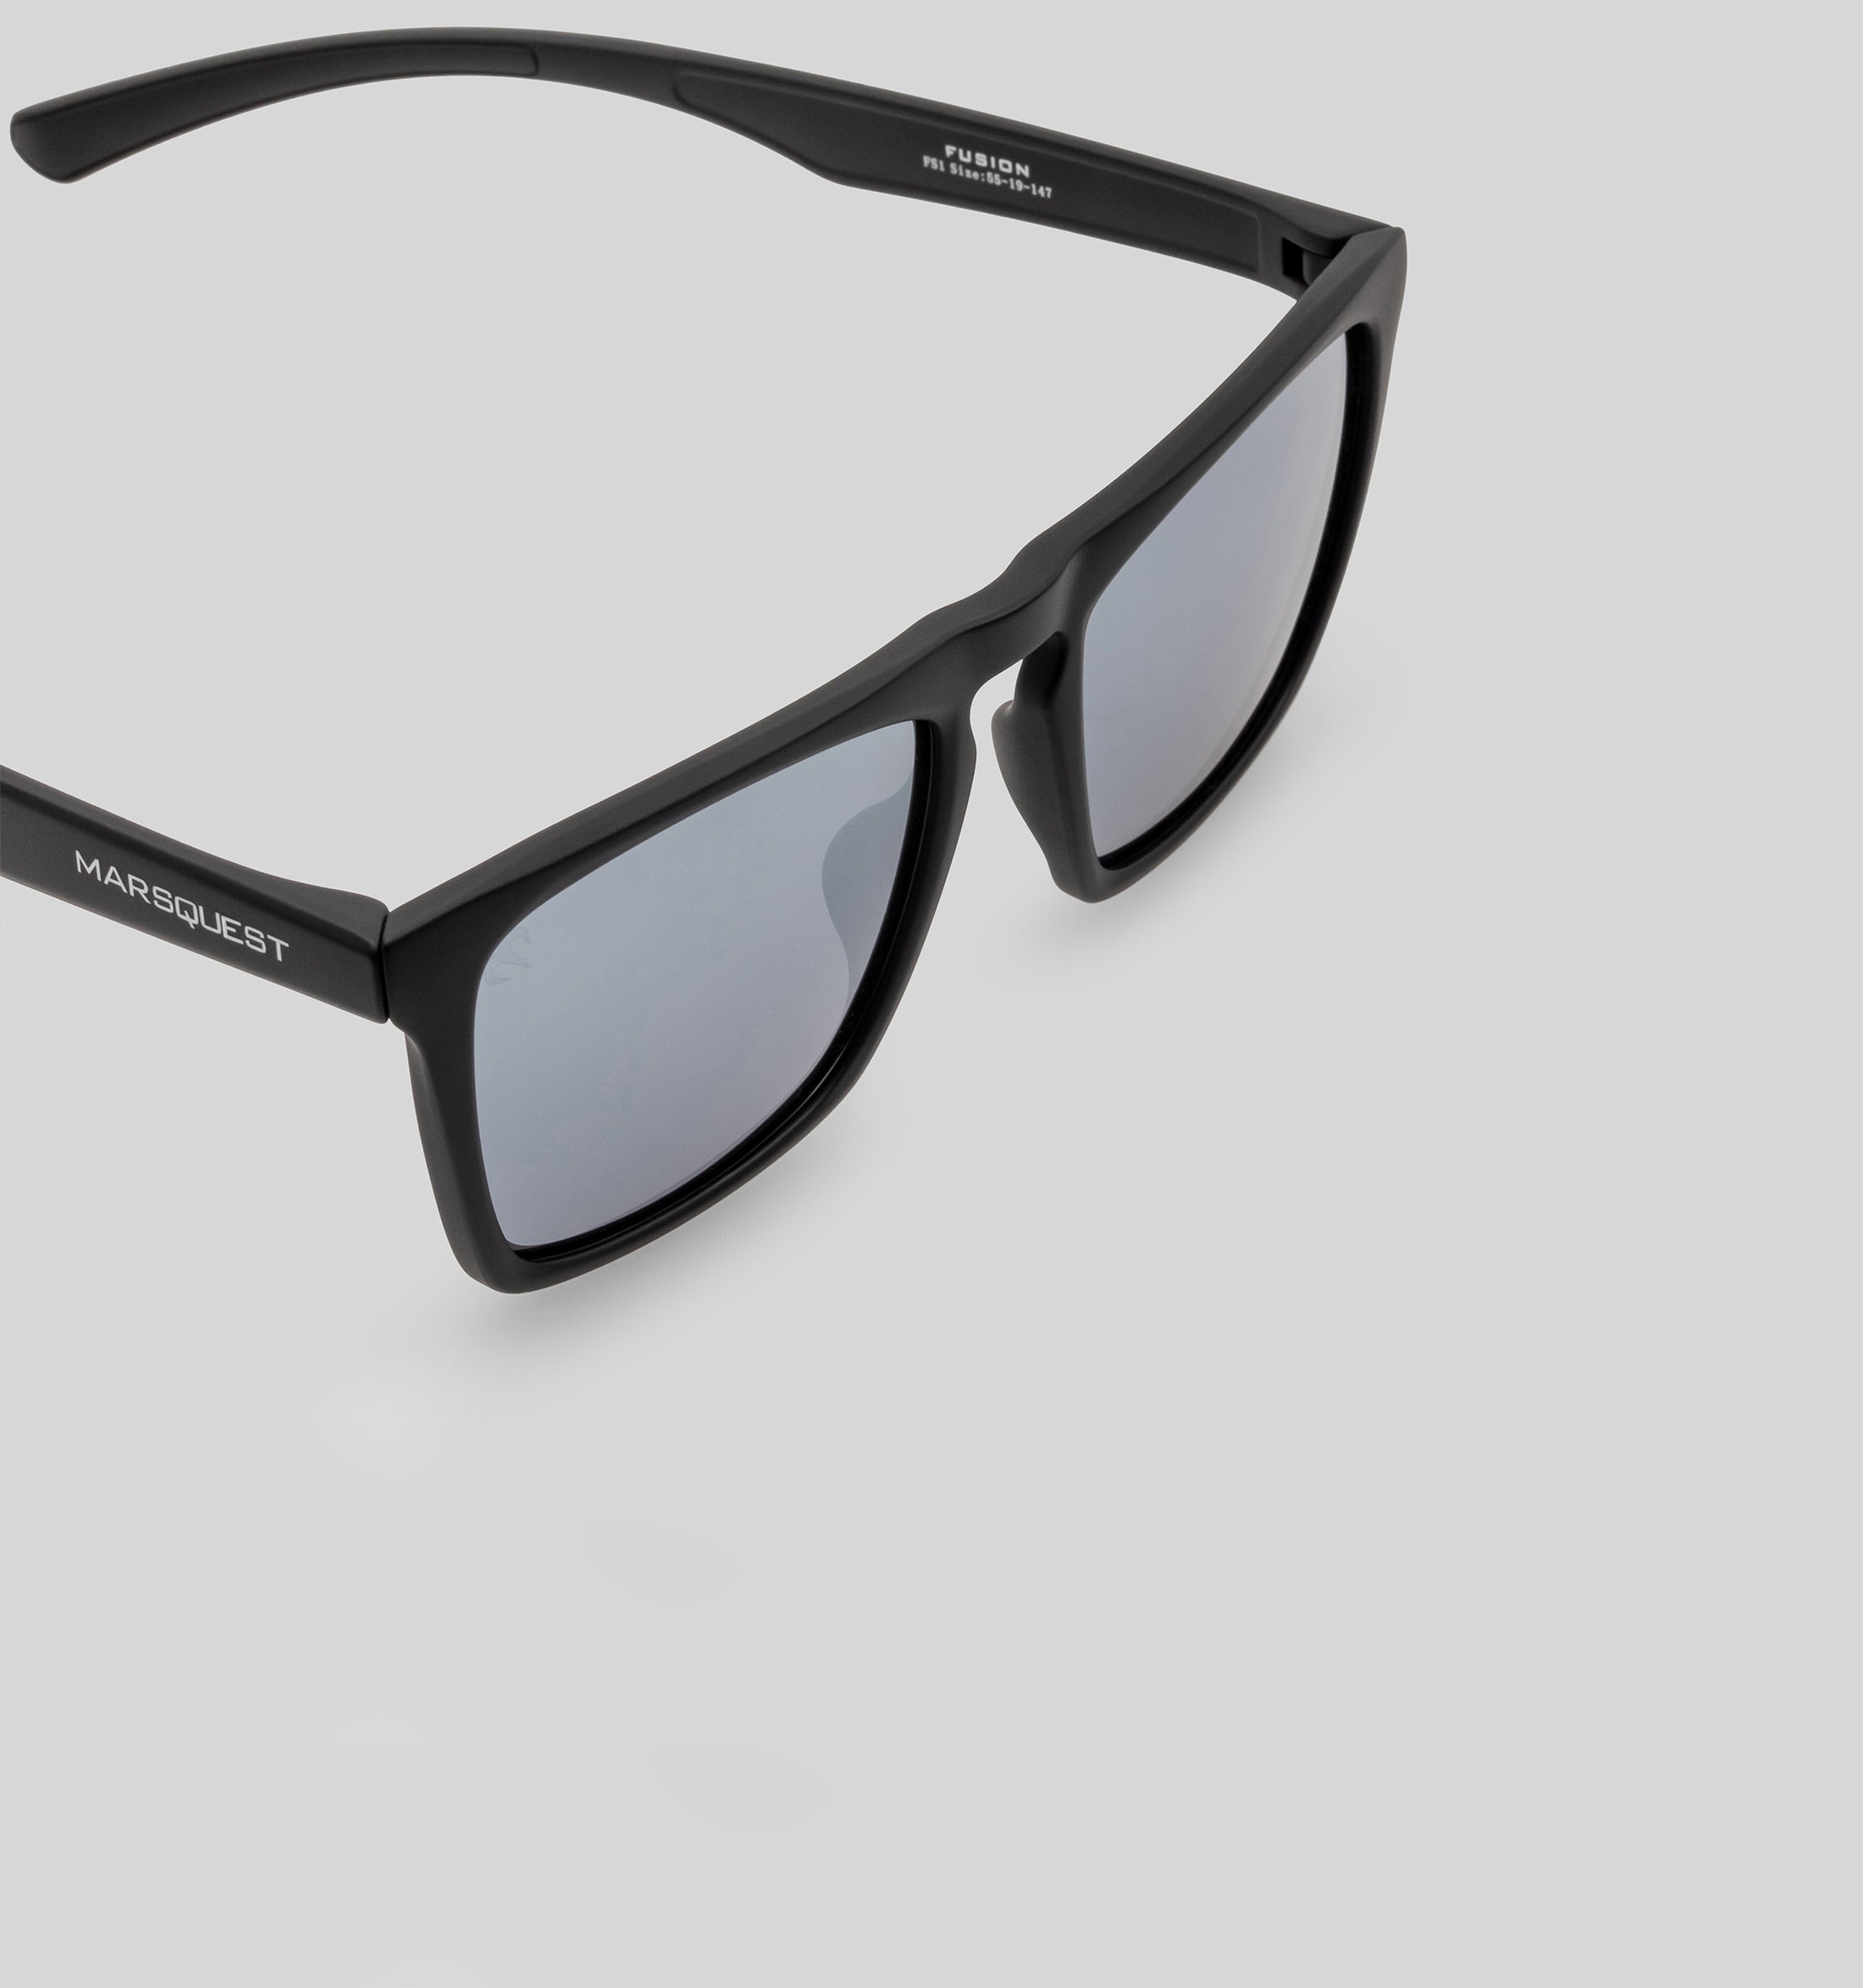 Fusion - Polarized Square Sunglasses for Men & Women | MarsQuest